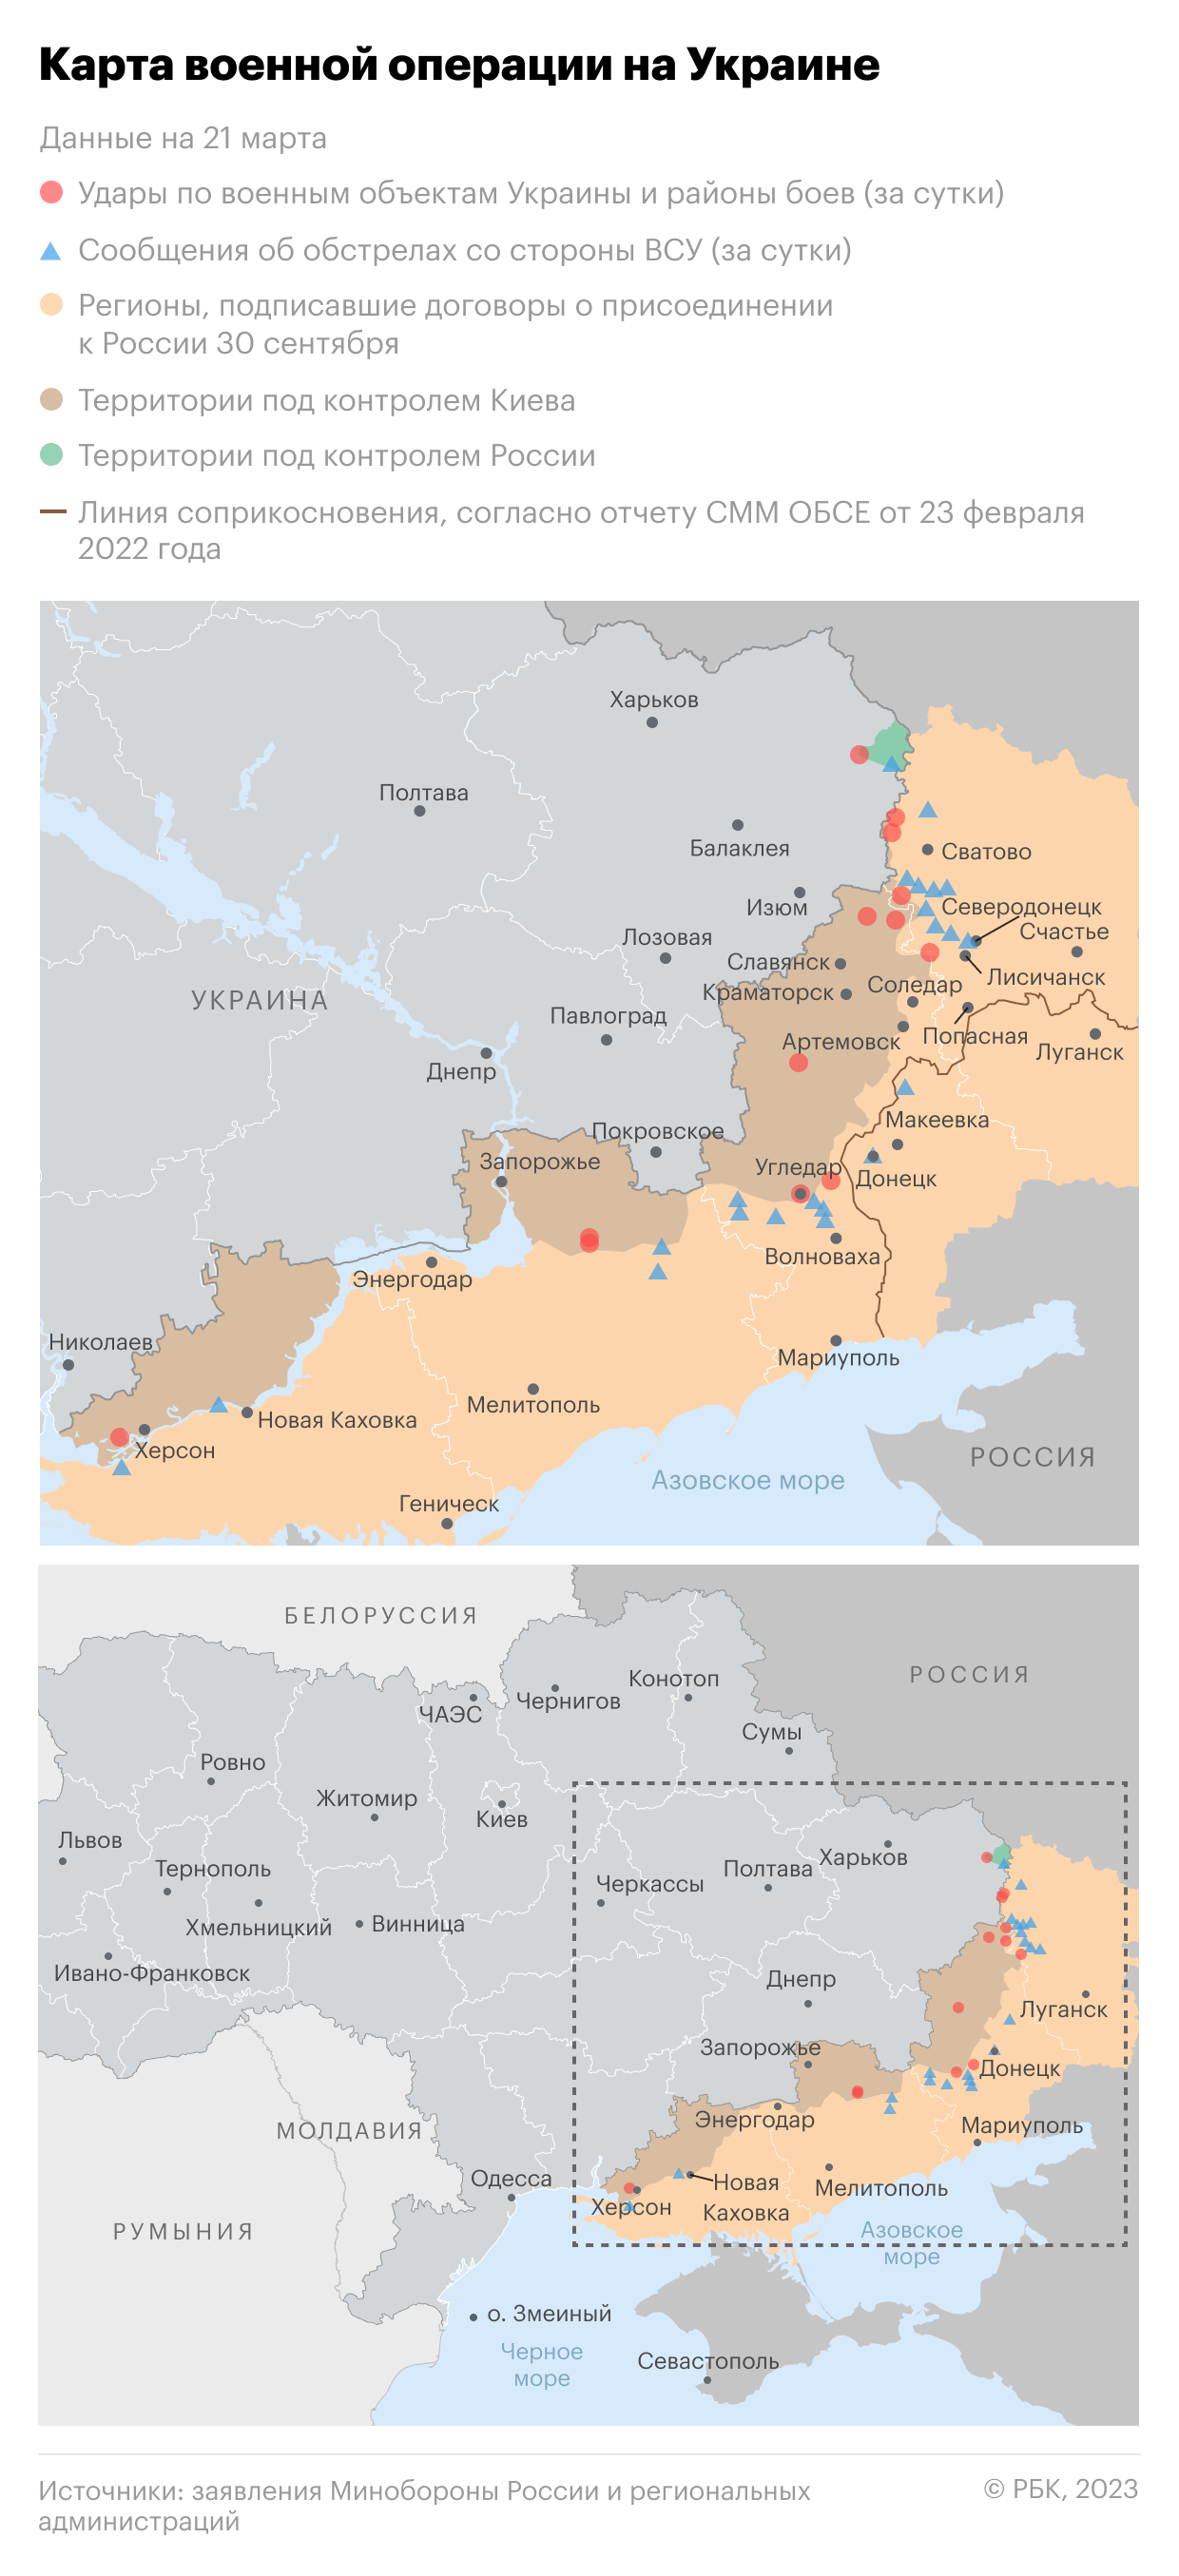 ВЦИОМ оценил поддержку операции на Украине в 72% россиян